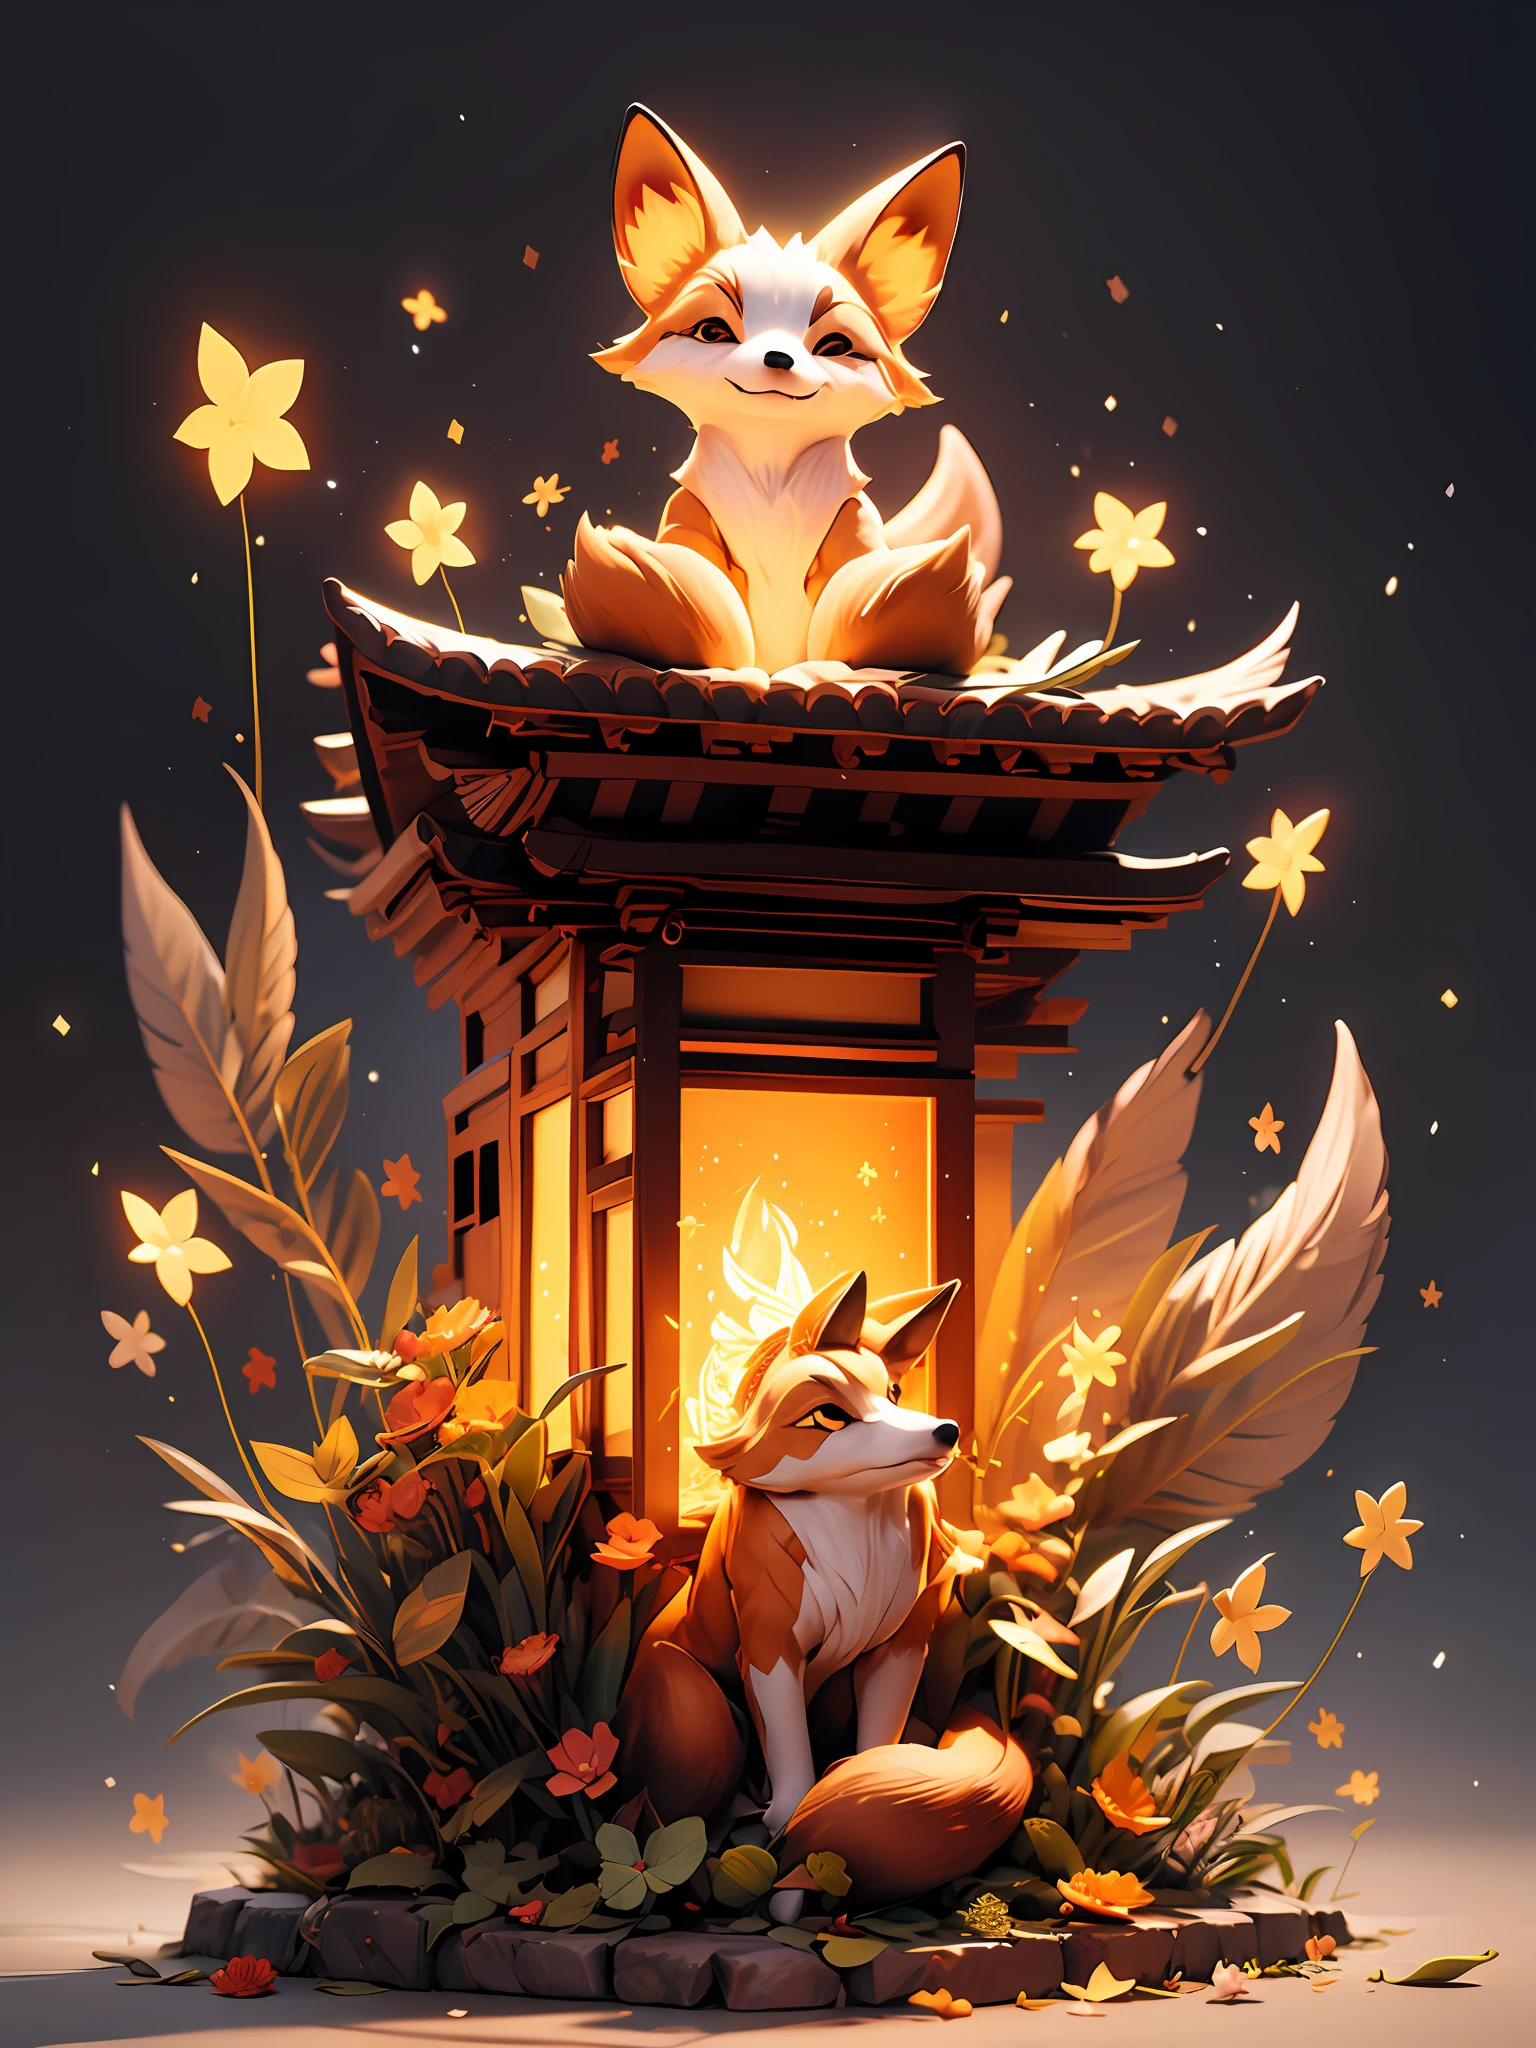 "迷人的夜景，日本寺廟，迷人的發光狐狸，周圍環繞著迷人的光粒子和令人驚嘆的燈光效果. 沒有人類在場."